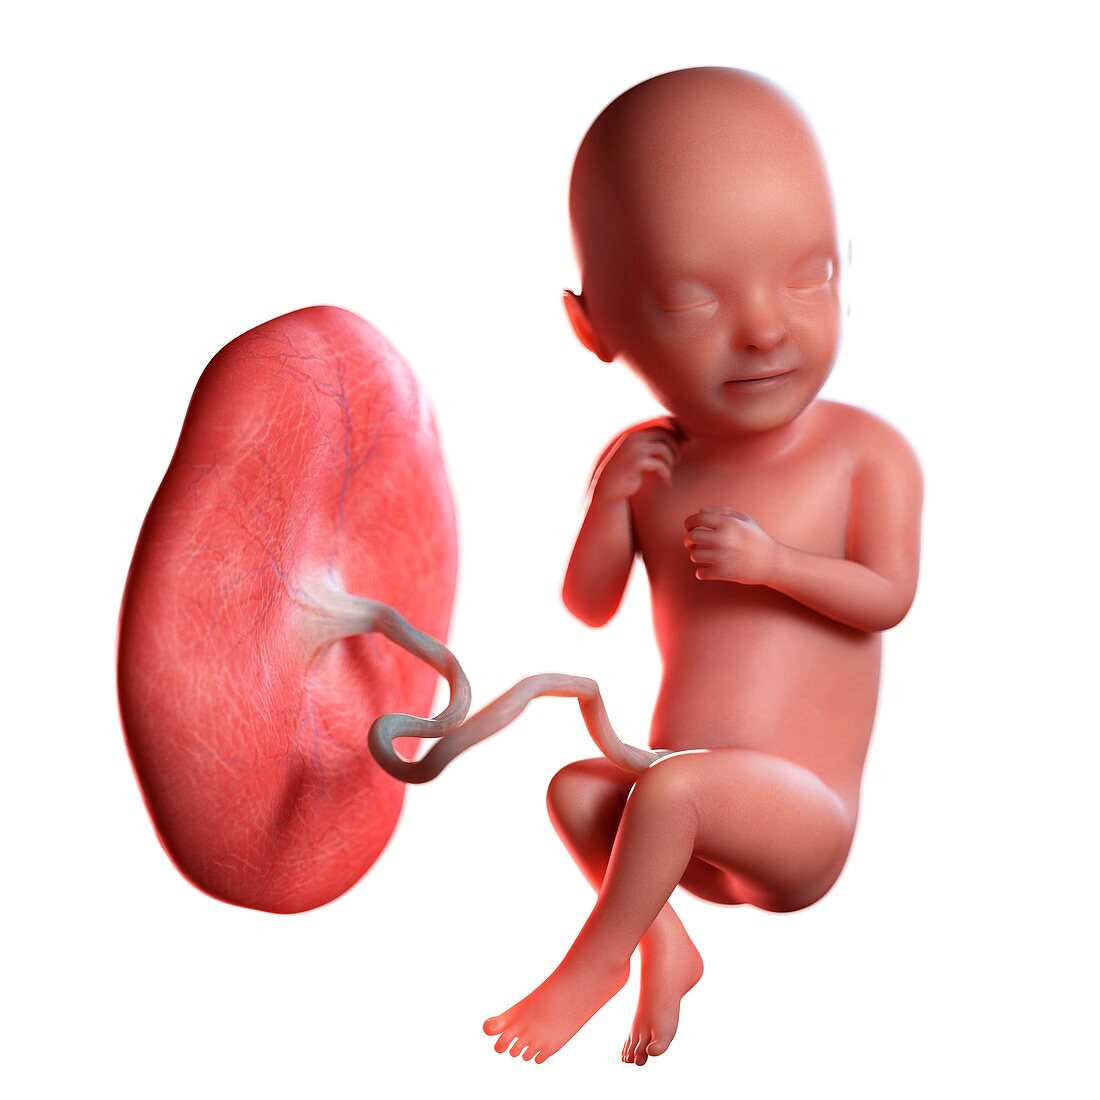 Human foetus age 33 weeks, illustration